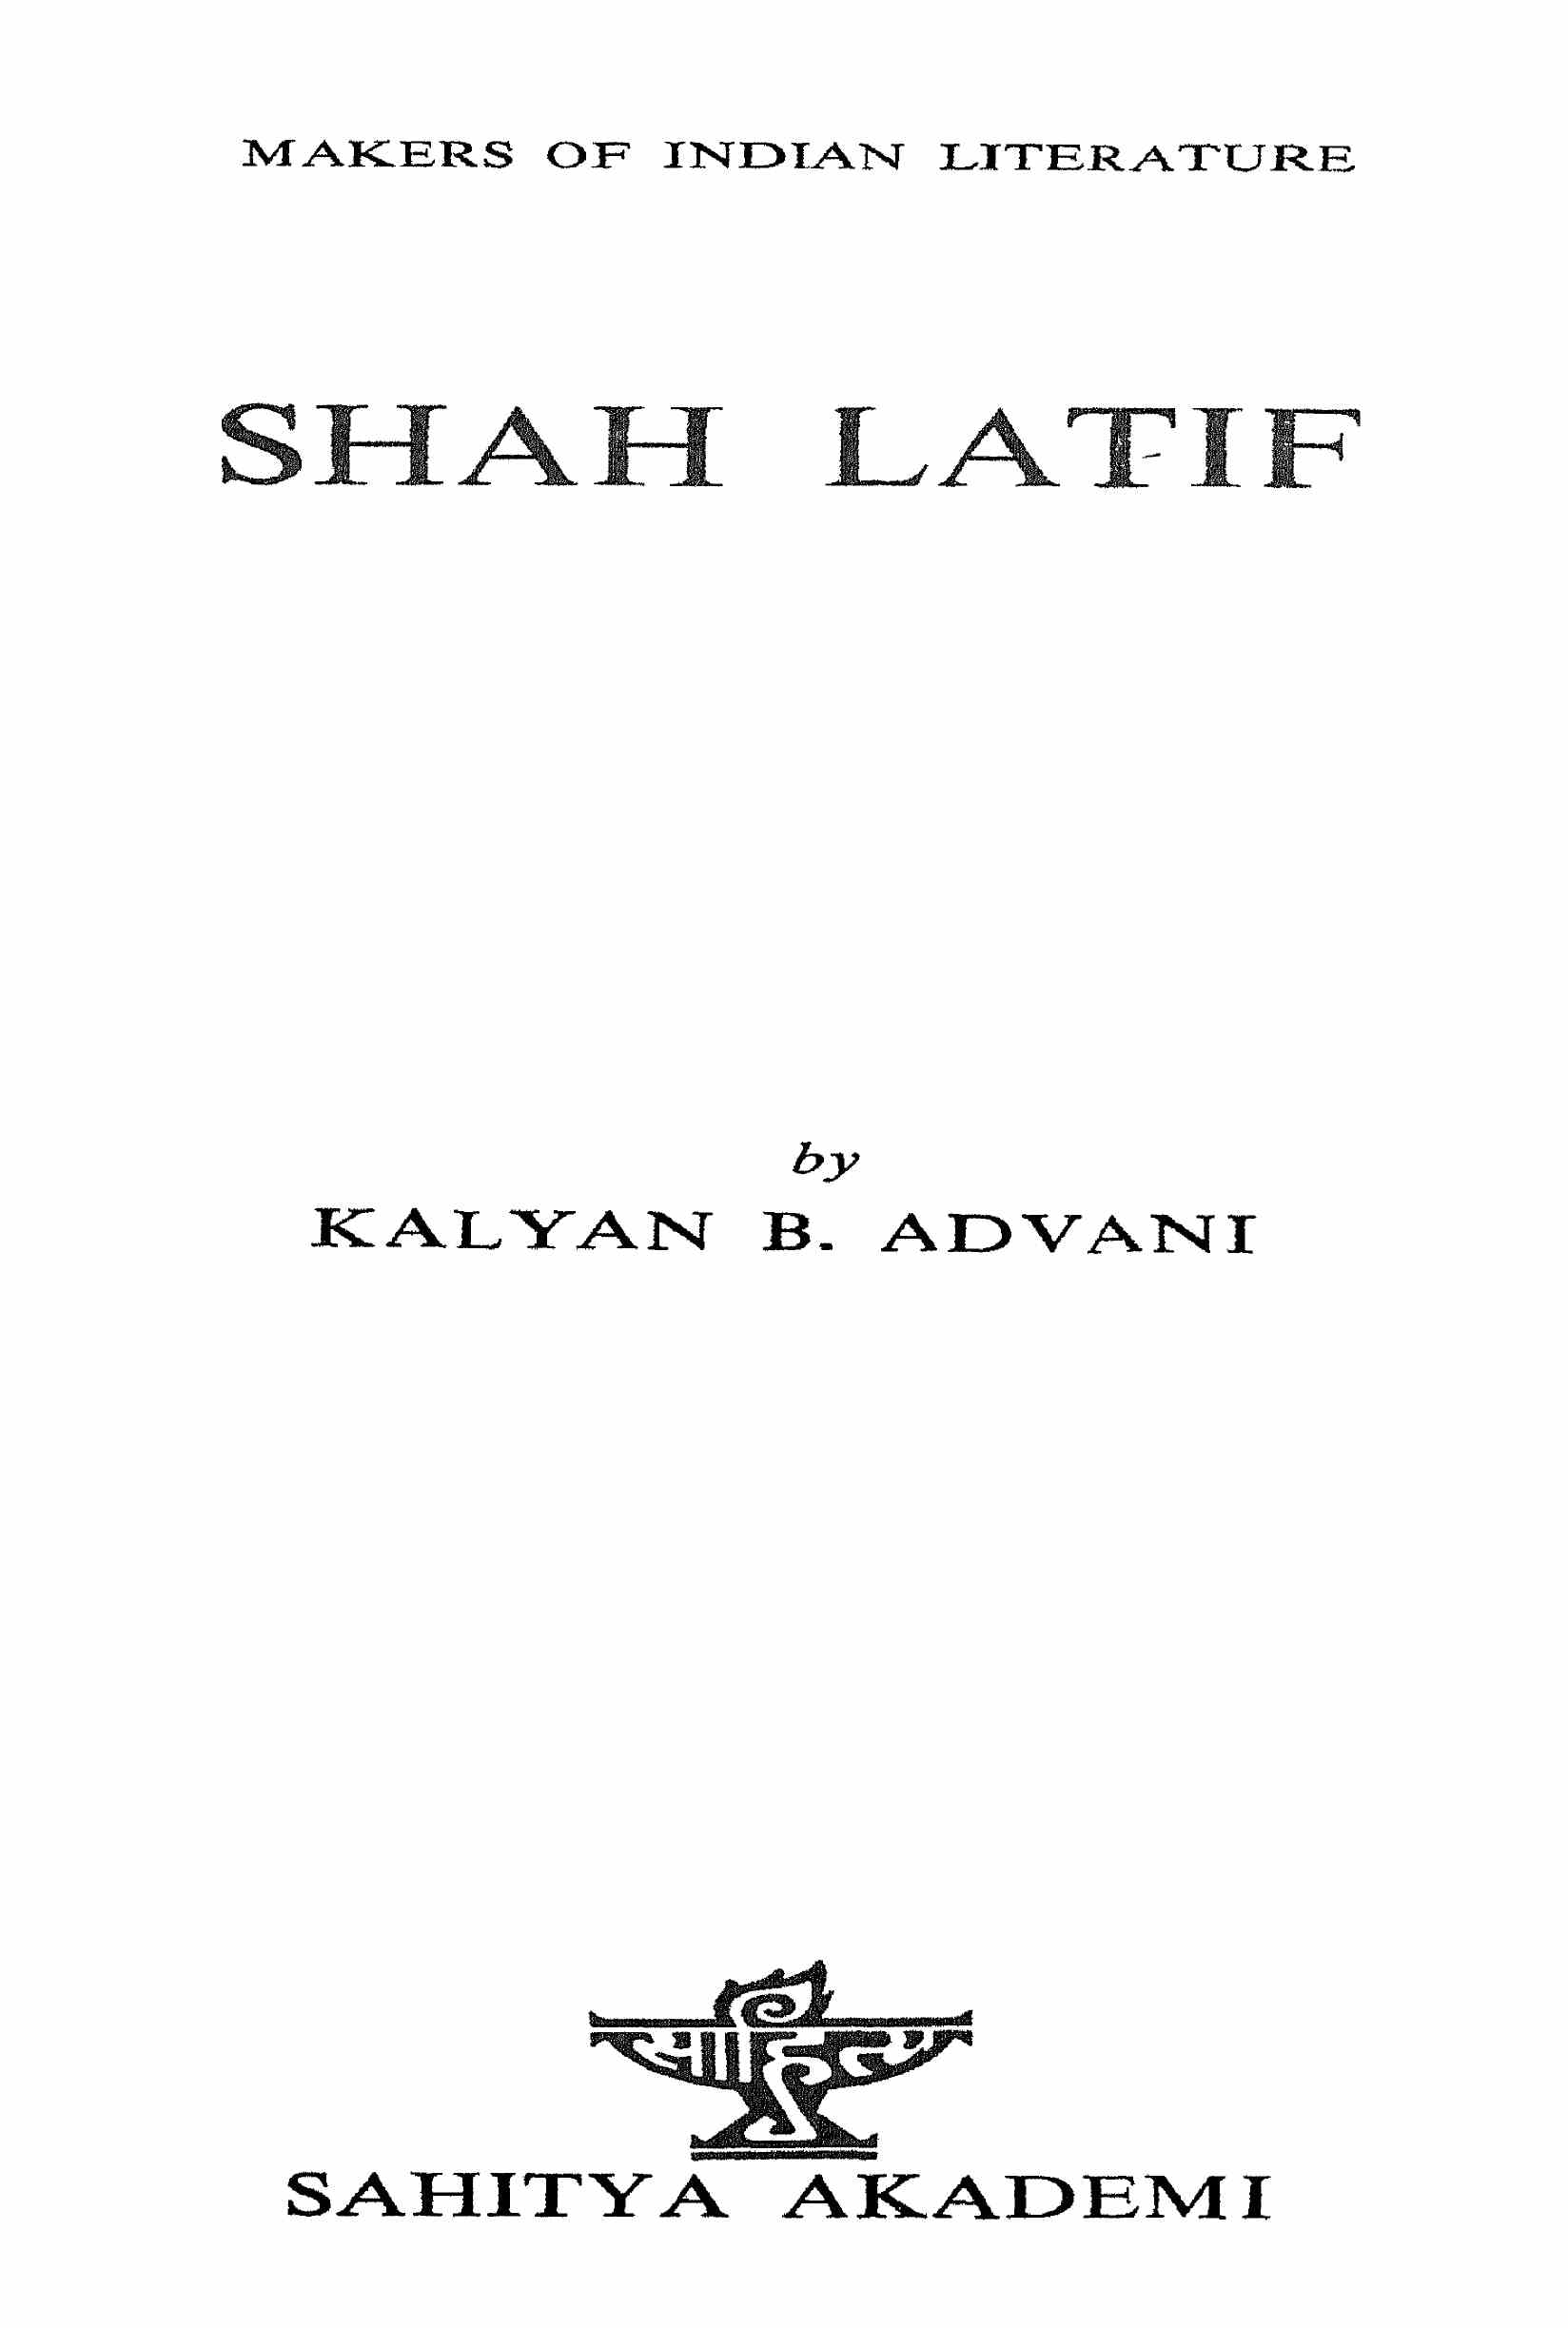 Shah Lateef